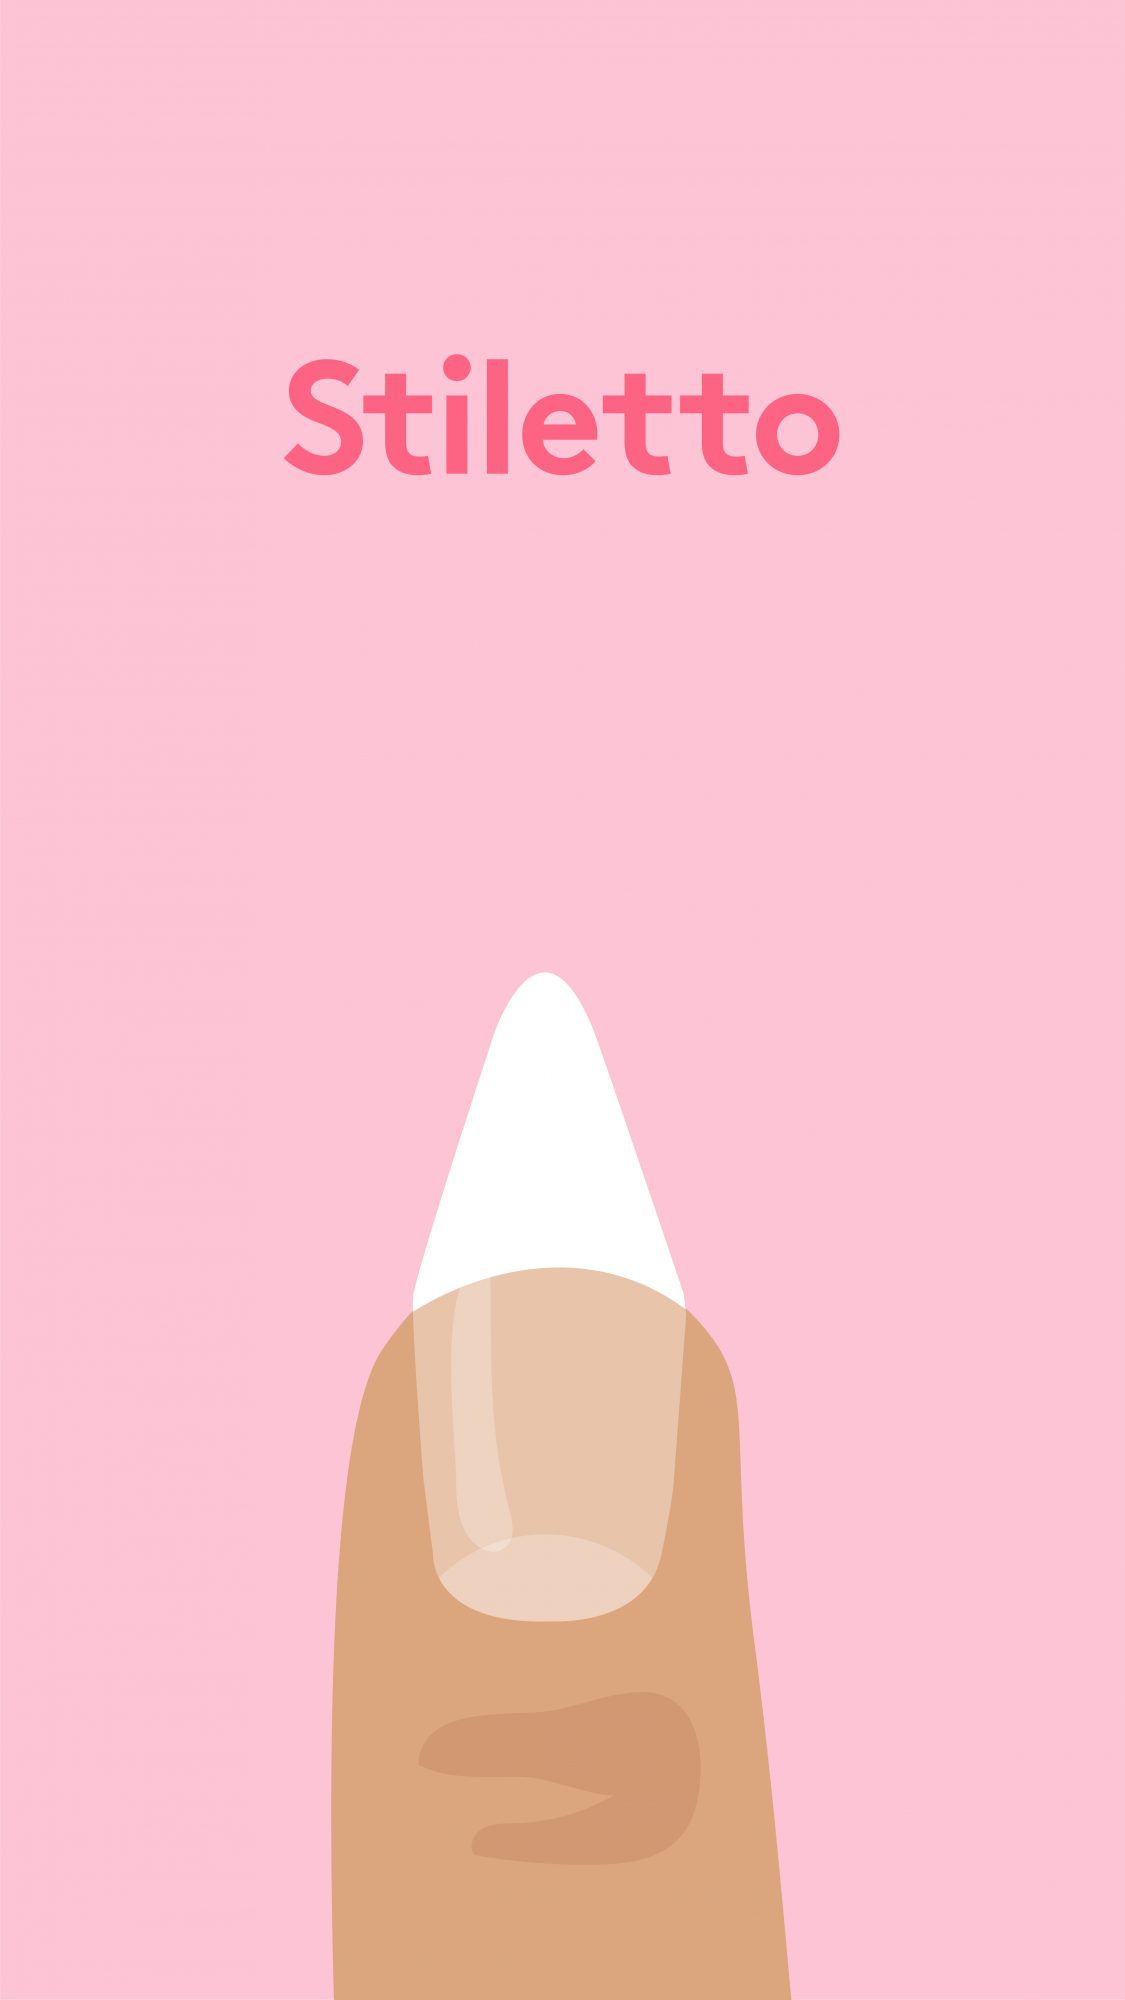 stiletto-nail-shape